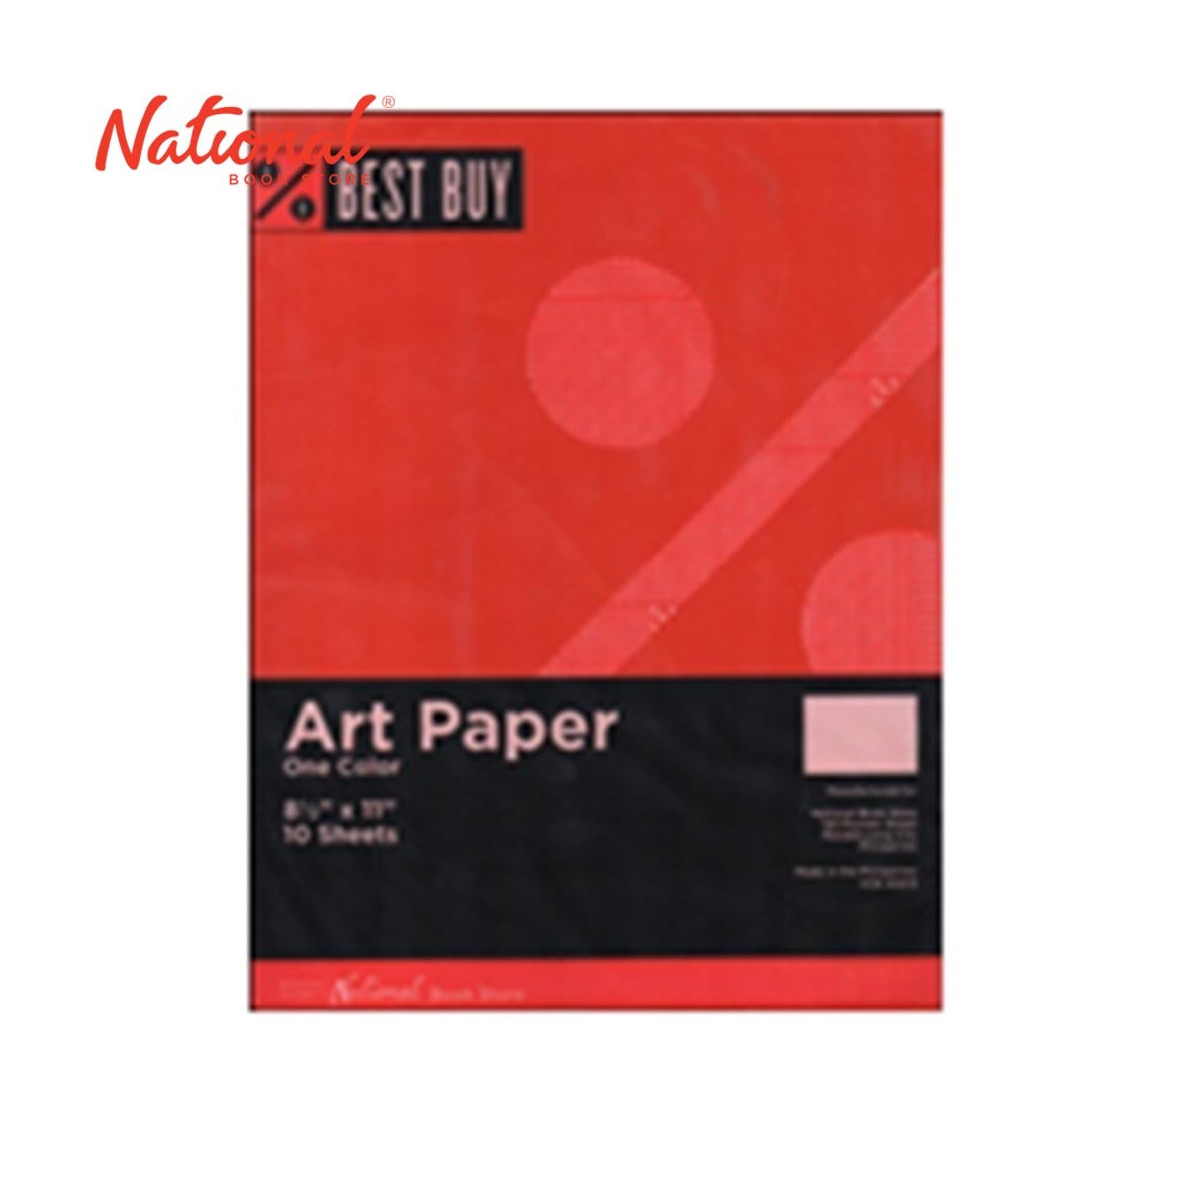 BEST BUY ART PAPER RED 10S